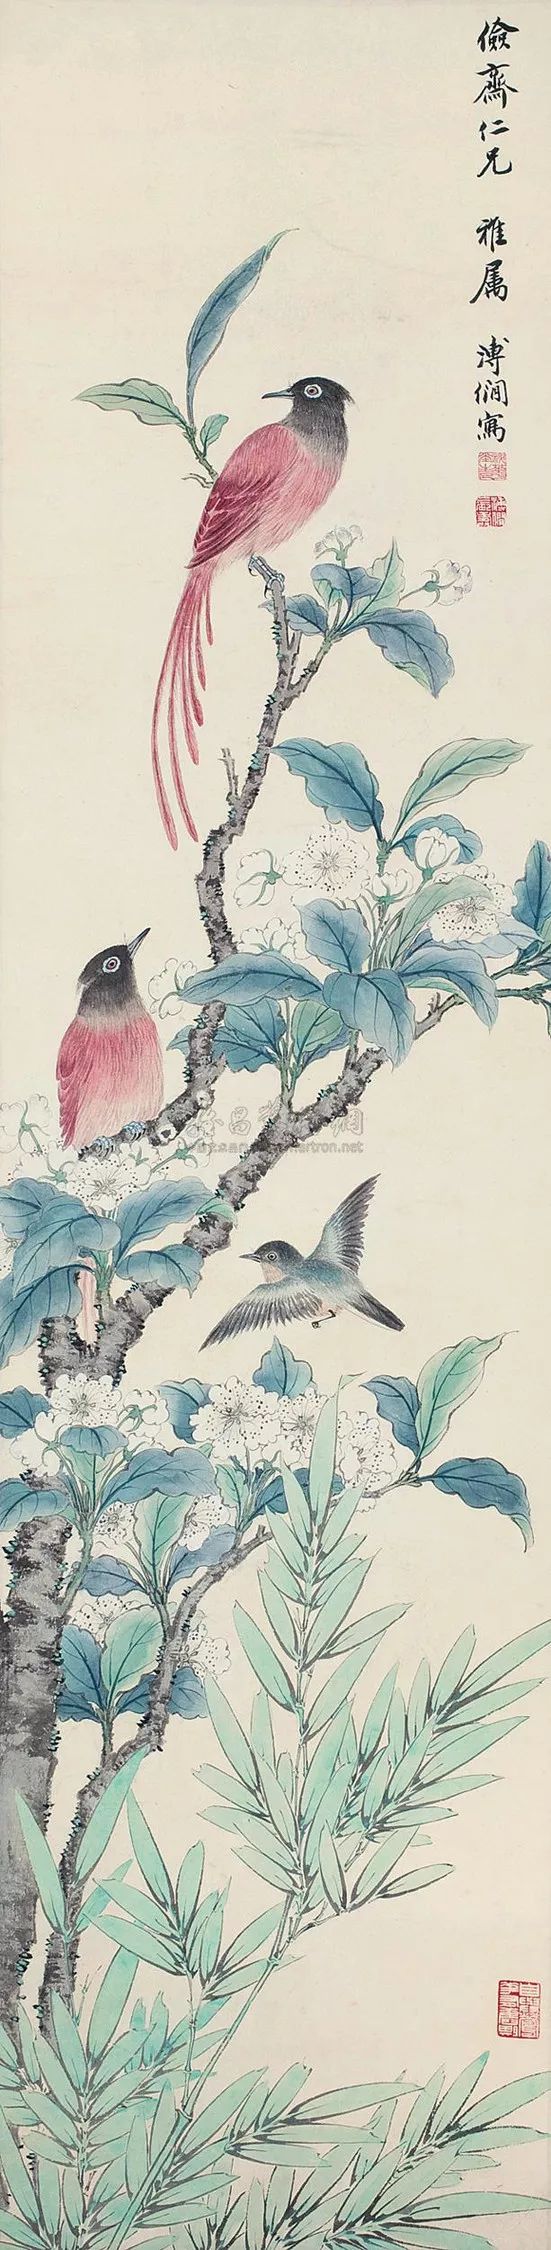 这位爱新觉罗皇族画家,花鸟也很出色!